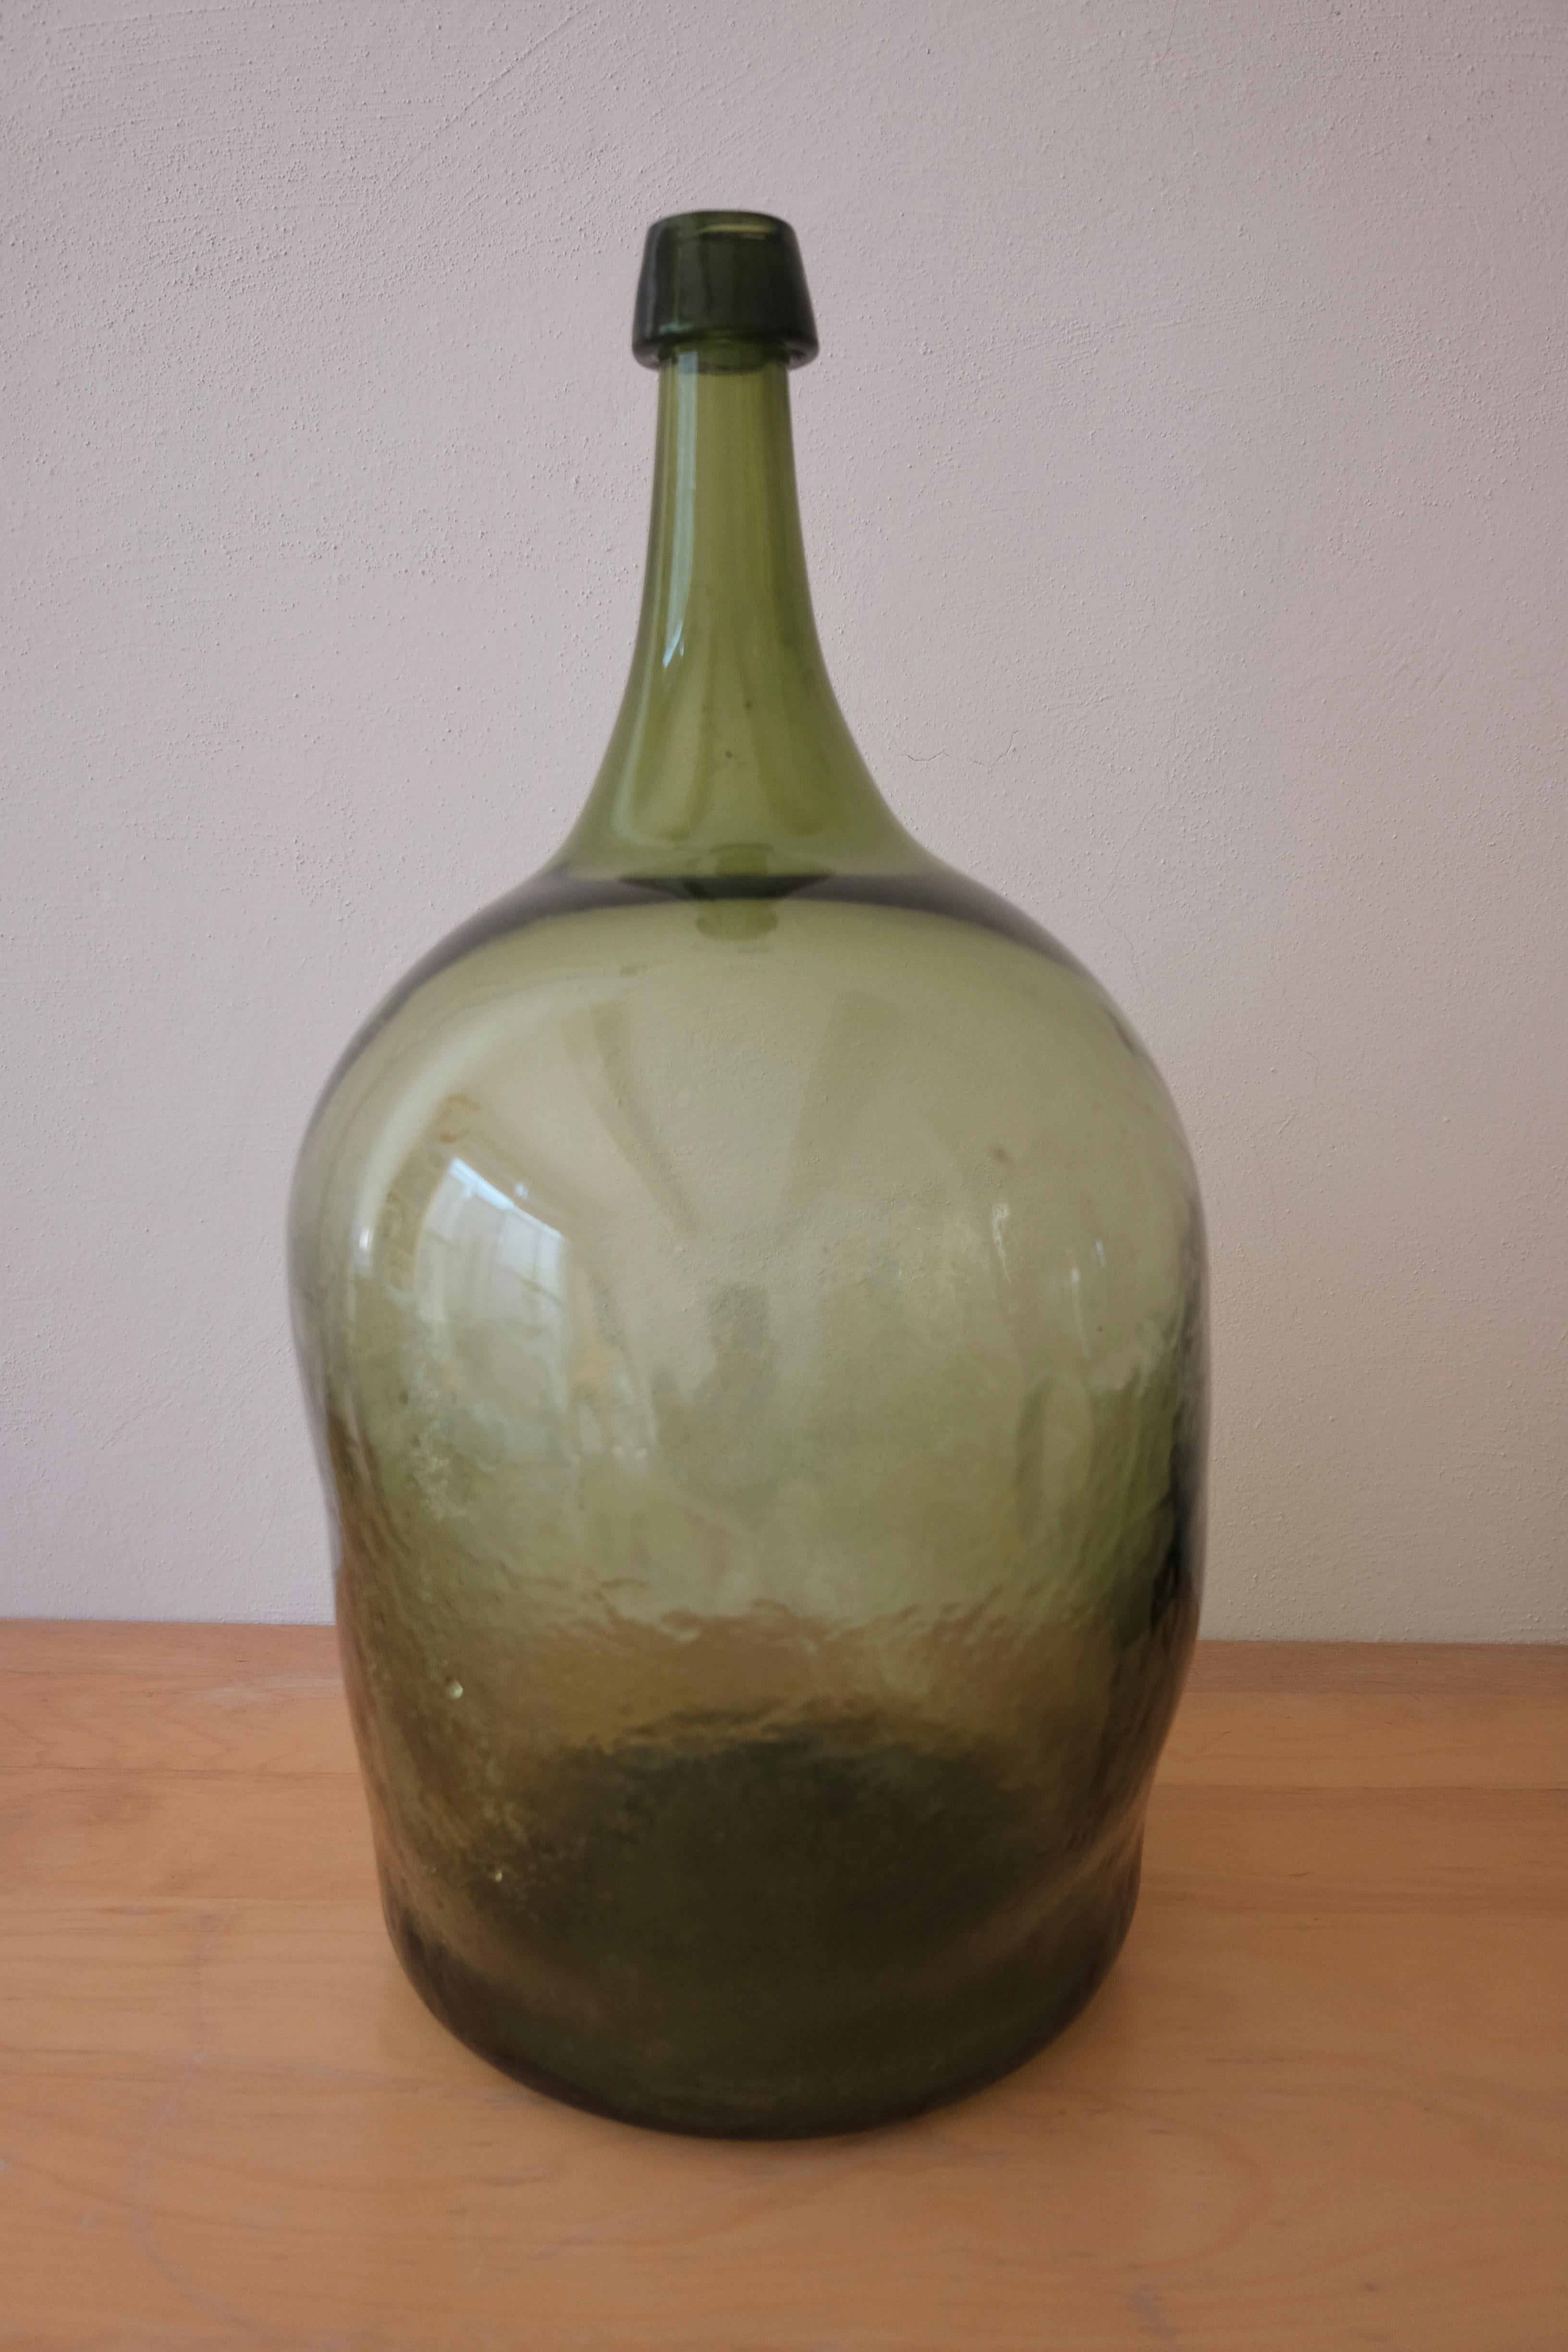 Mouth-blown mezcal demijohn from Veracruz, Mexico. Mineral green color. No mold seams evident throughout the jug, circa 1910-1920.